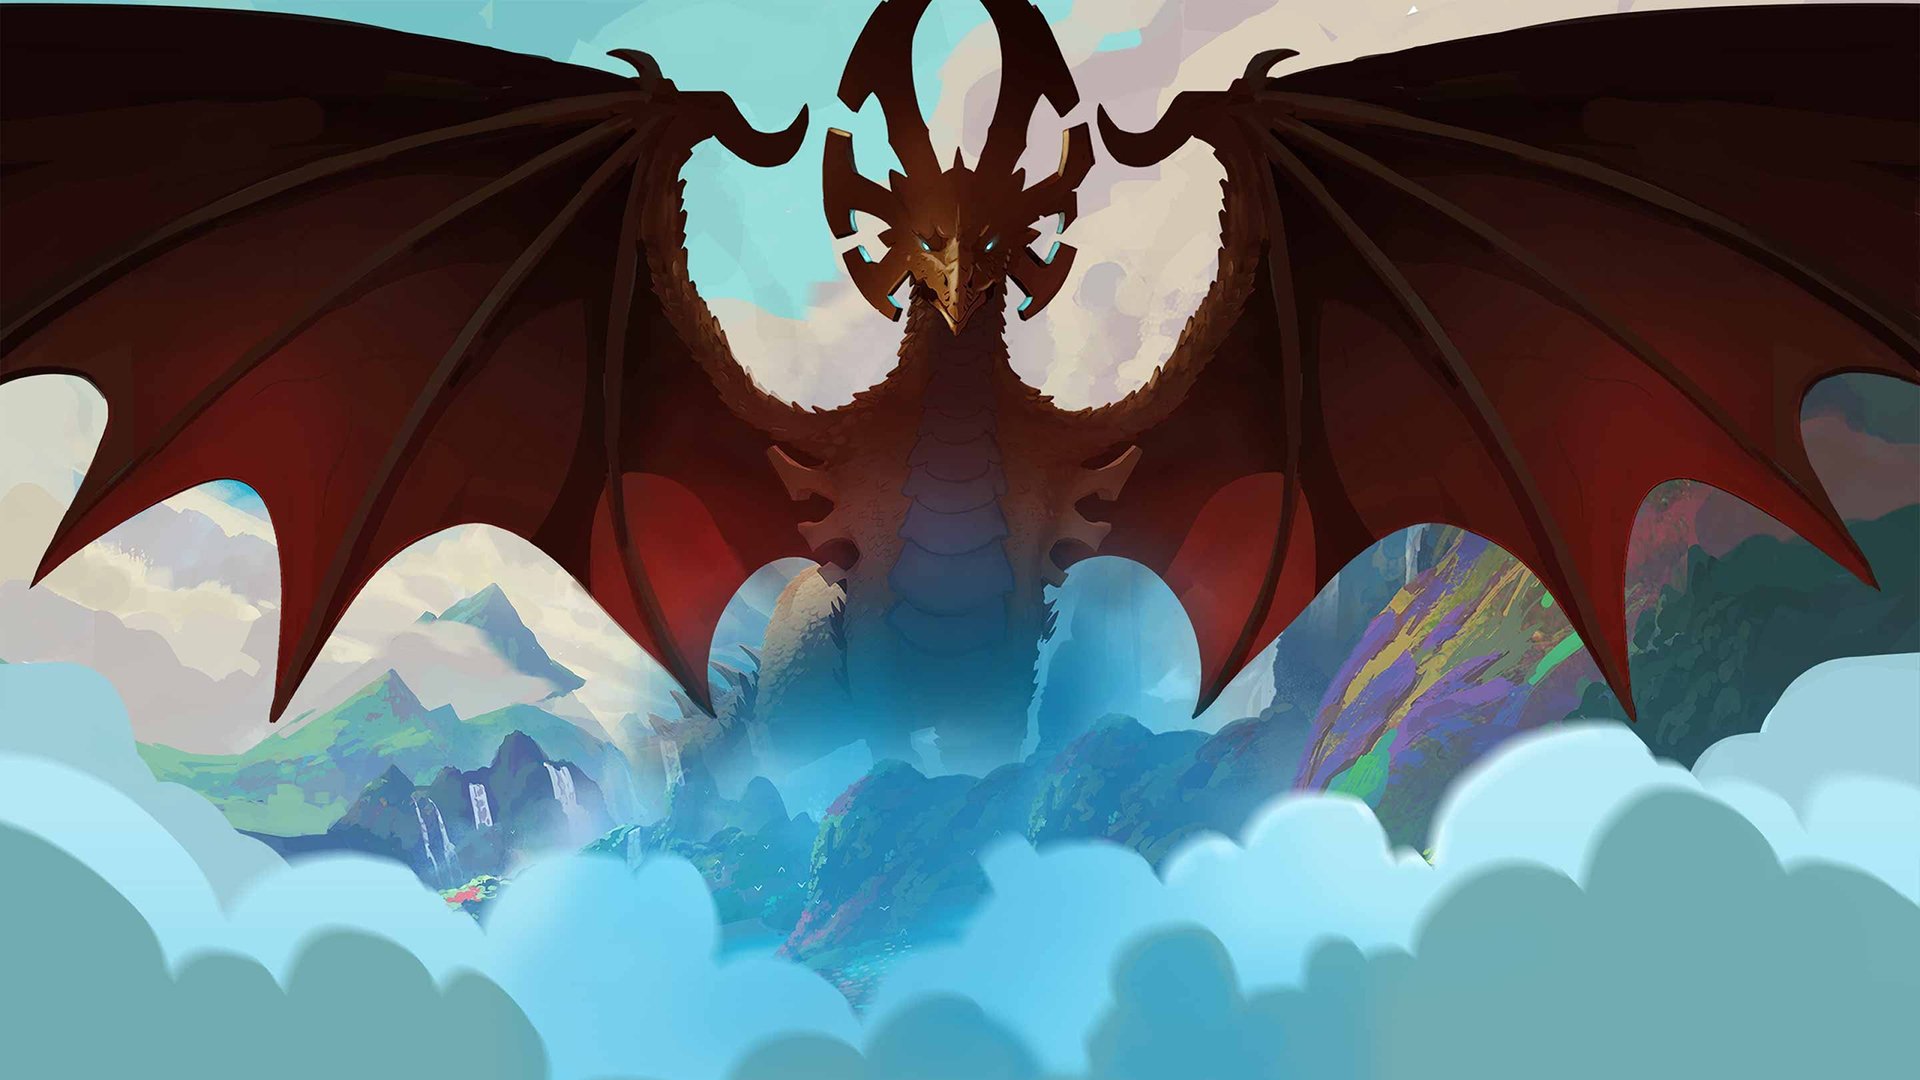 Dragon Prince Wallpapers